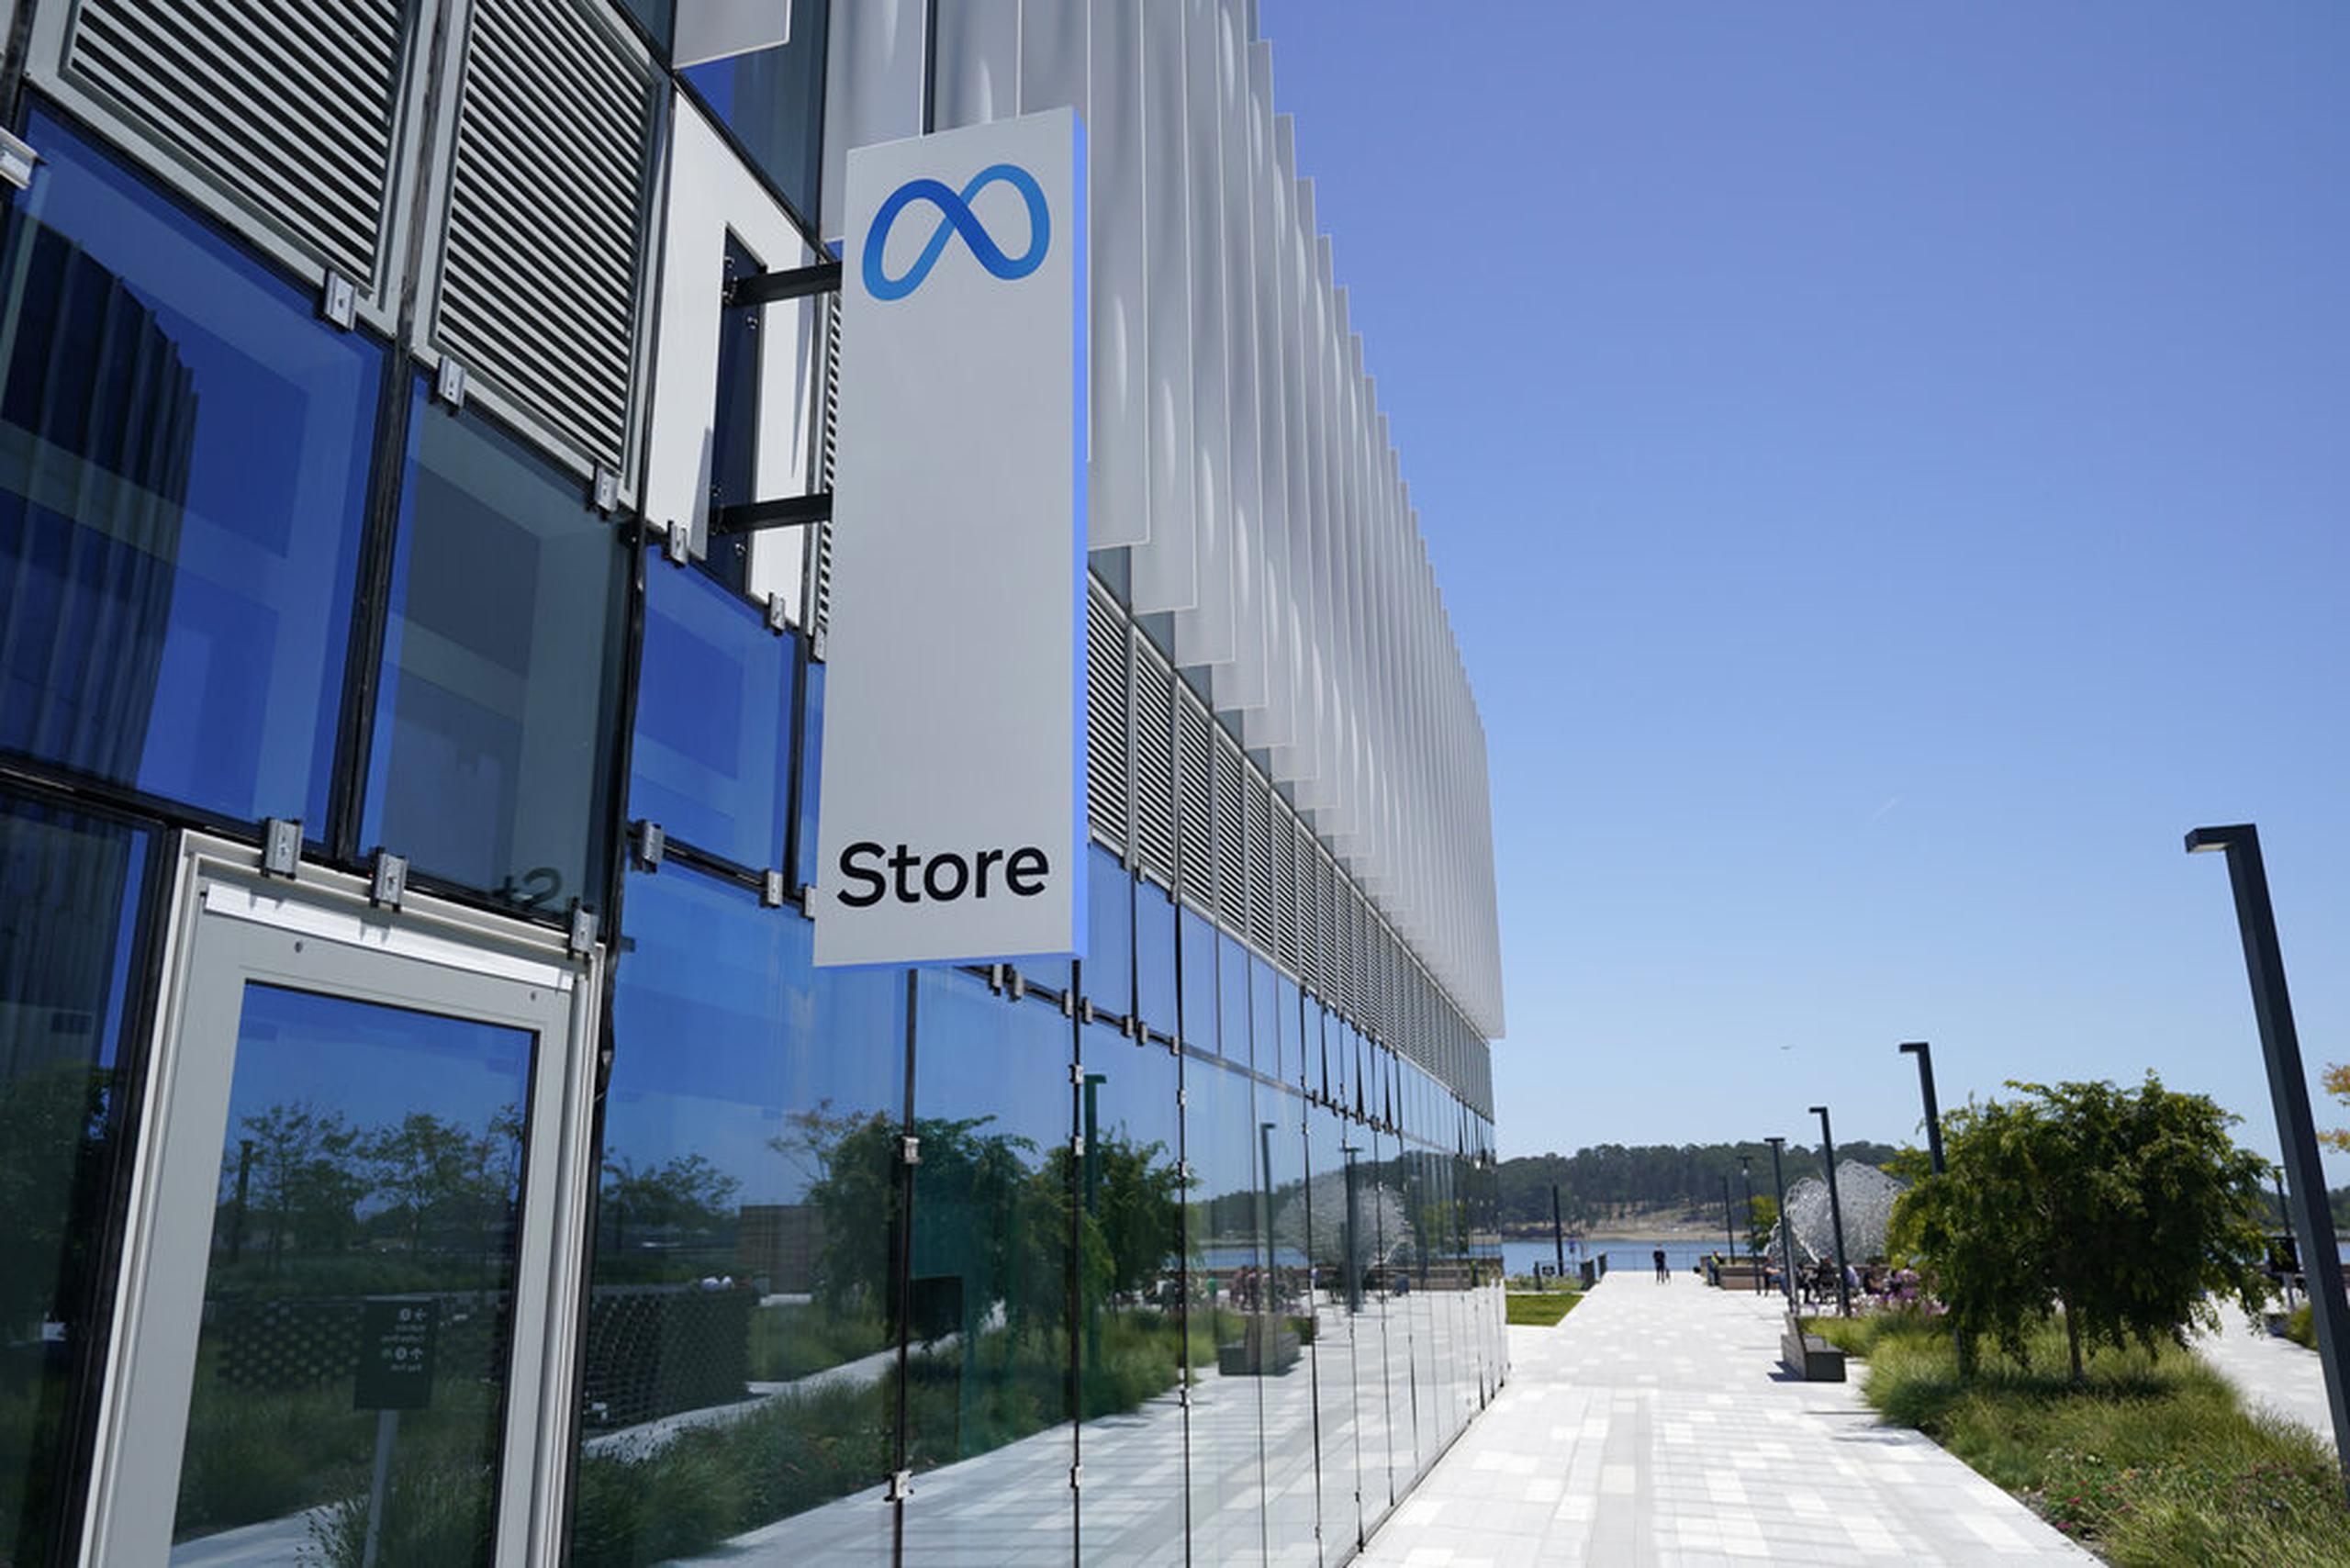 La fachada de la tienda Meta en Burlingame, California, el 4 de mayo de 2022.